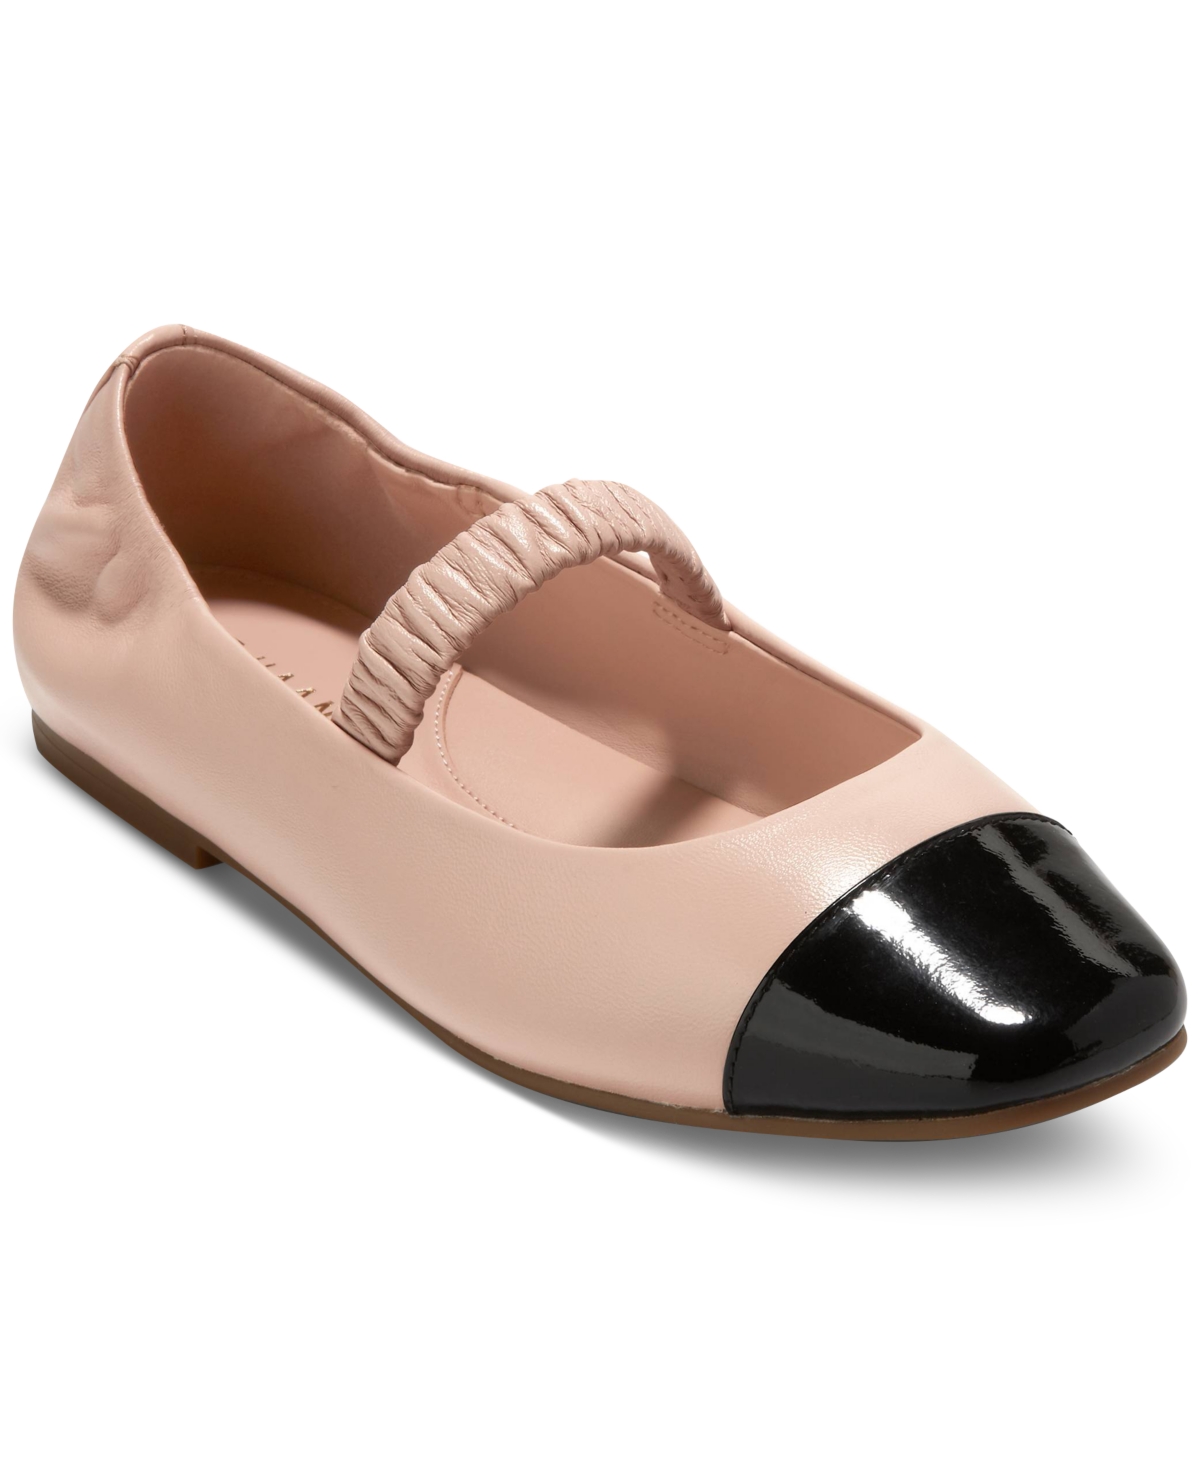 Women's Yvette Slip-On Ballet Flats - Porcelain Leather, Black Patent Leather